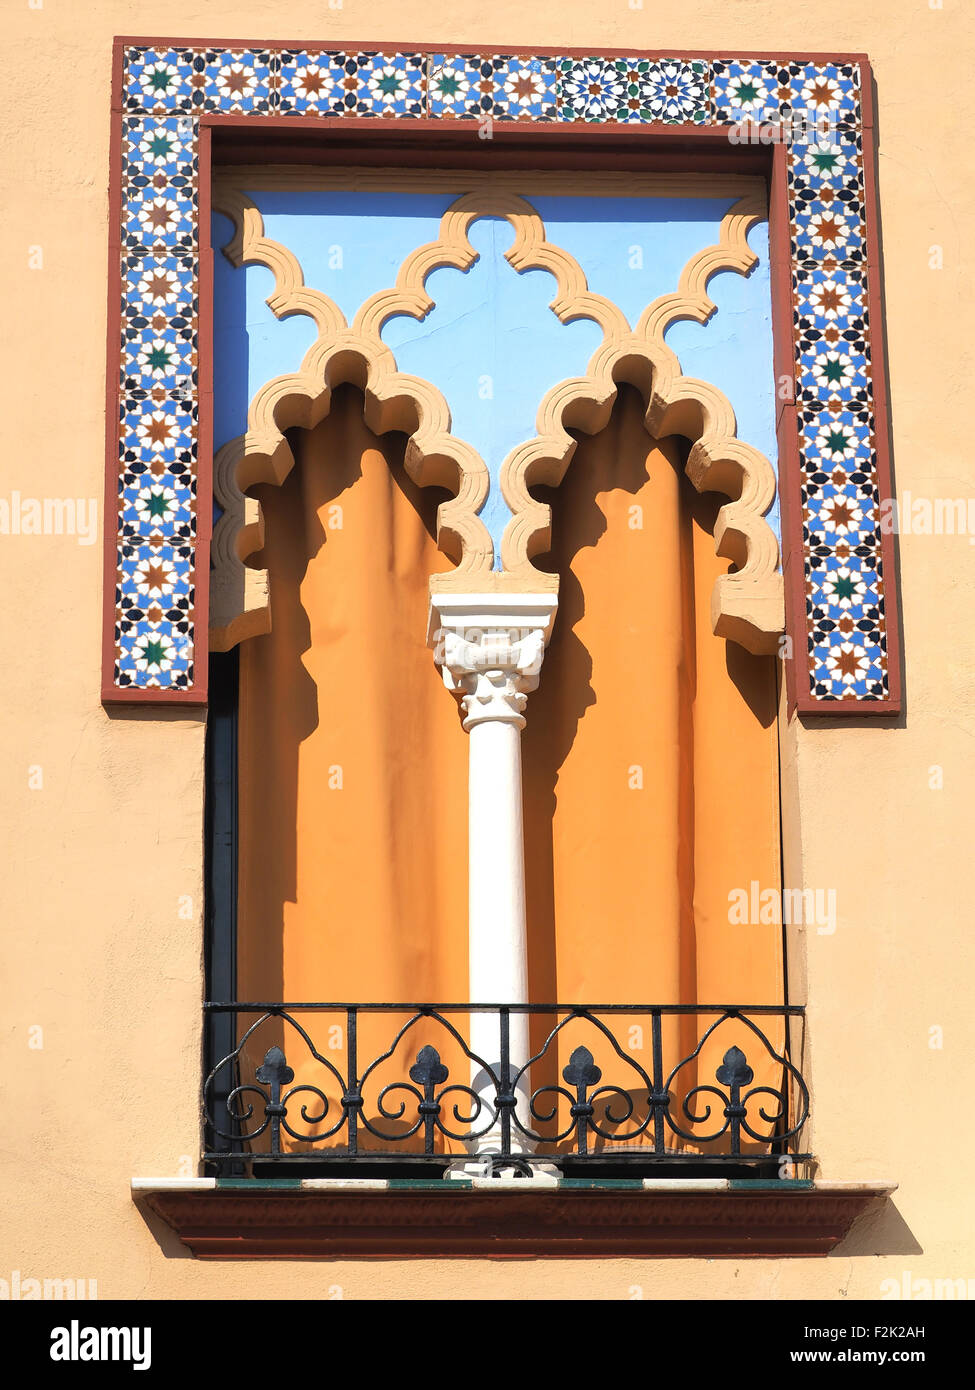 Alte Fenster im arabischen Stil in Córdoba Spanien - Architektur-Hintergrund Stockfoto